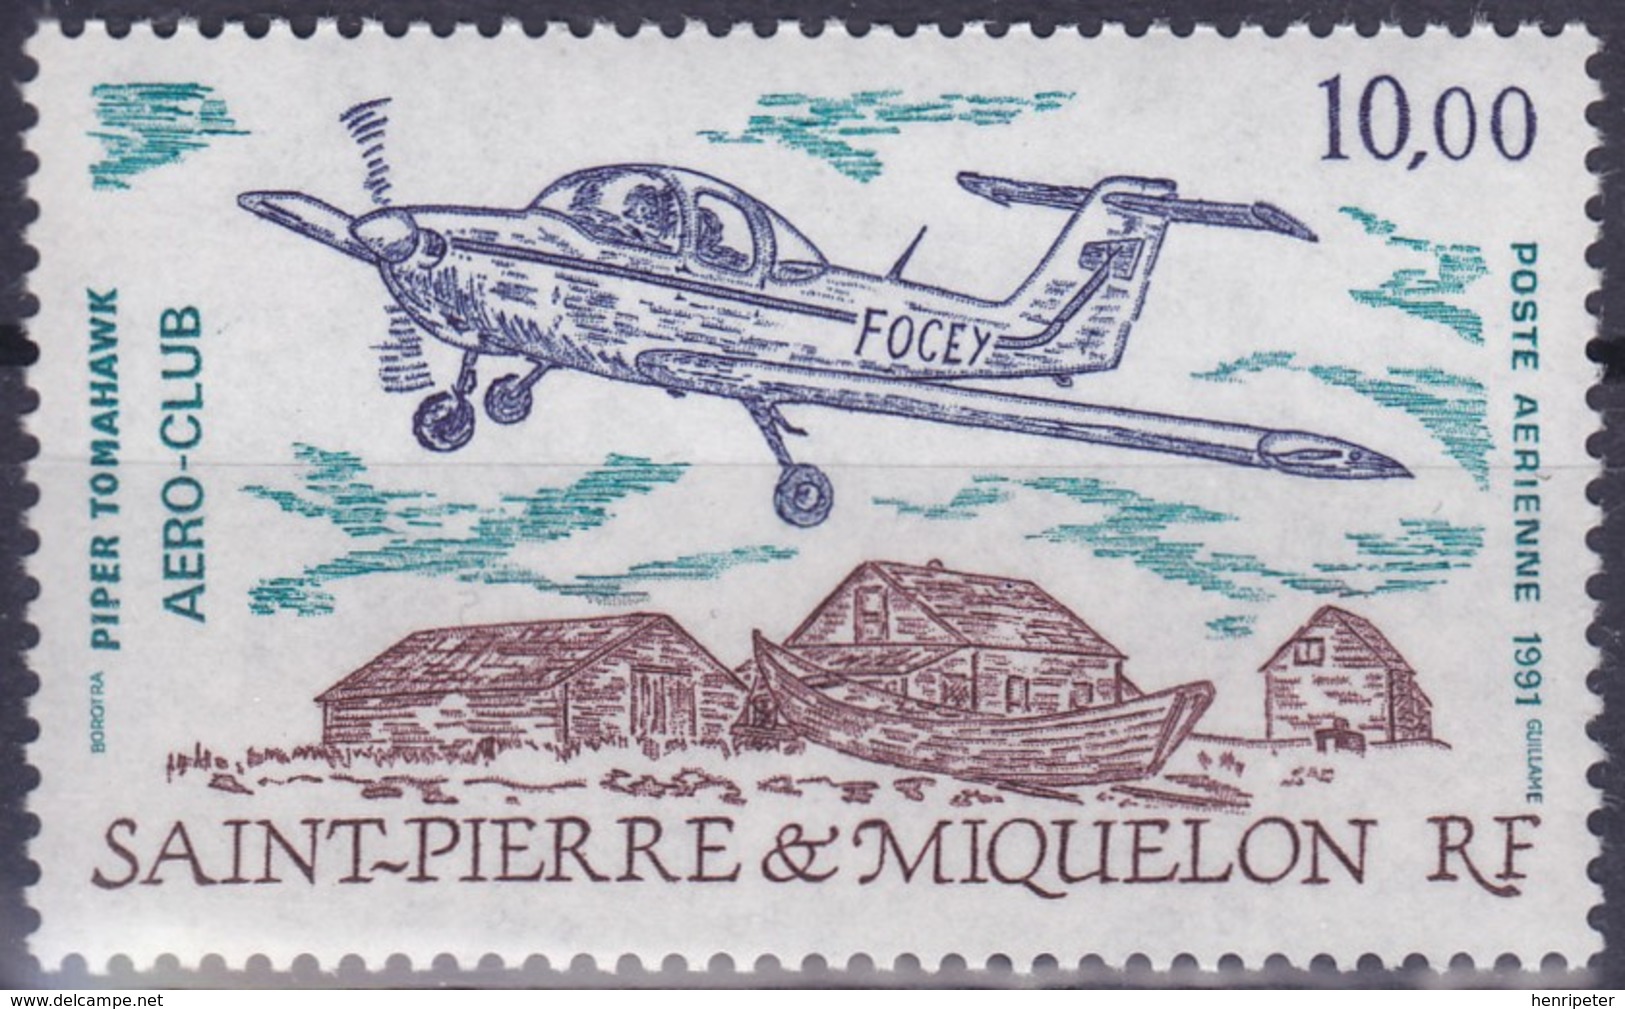 Timbre Aérien Neuf** - Aéro-Club De Saint-Pierre Piper Tomahawk - N° 70 (Yvert) - Saint-Pierre Et Miquelon 1991 - Ungebraucht